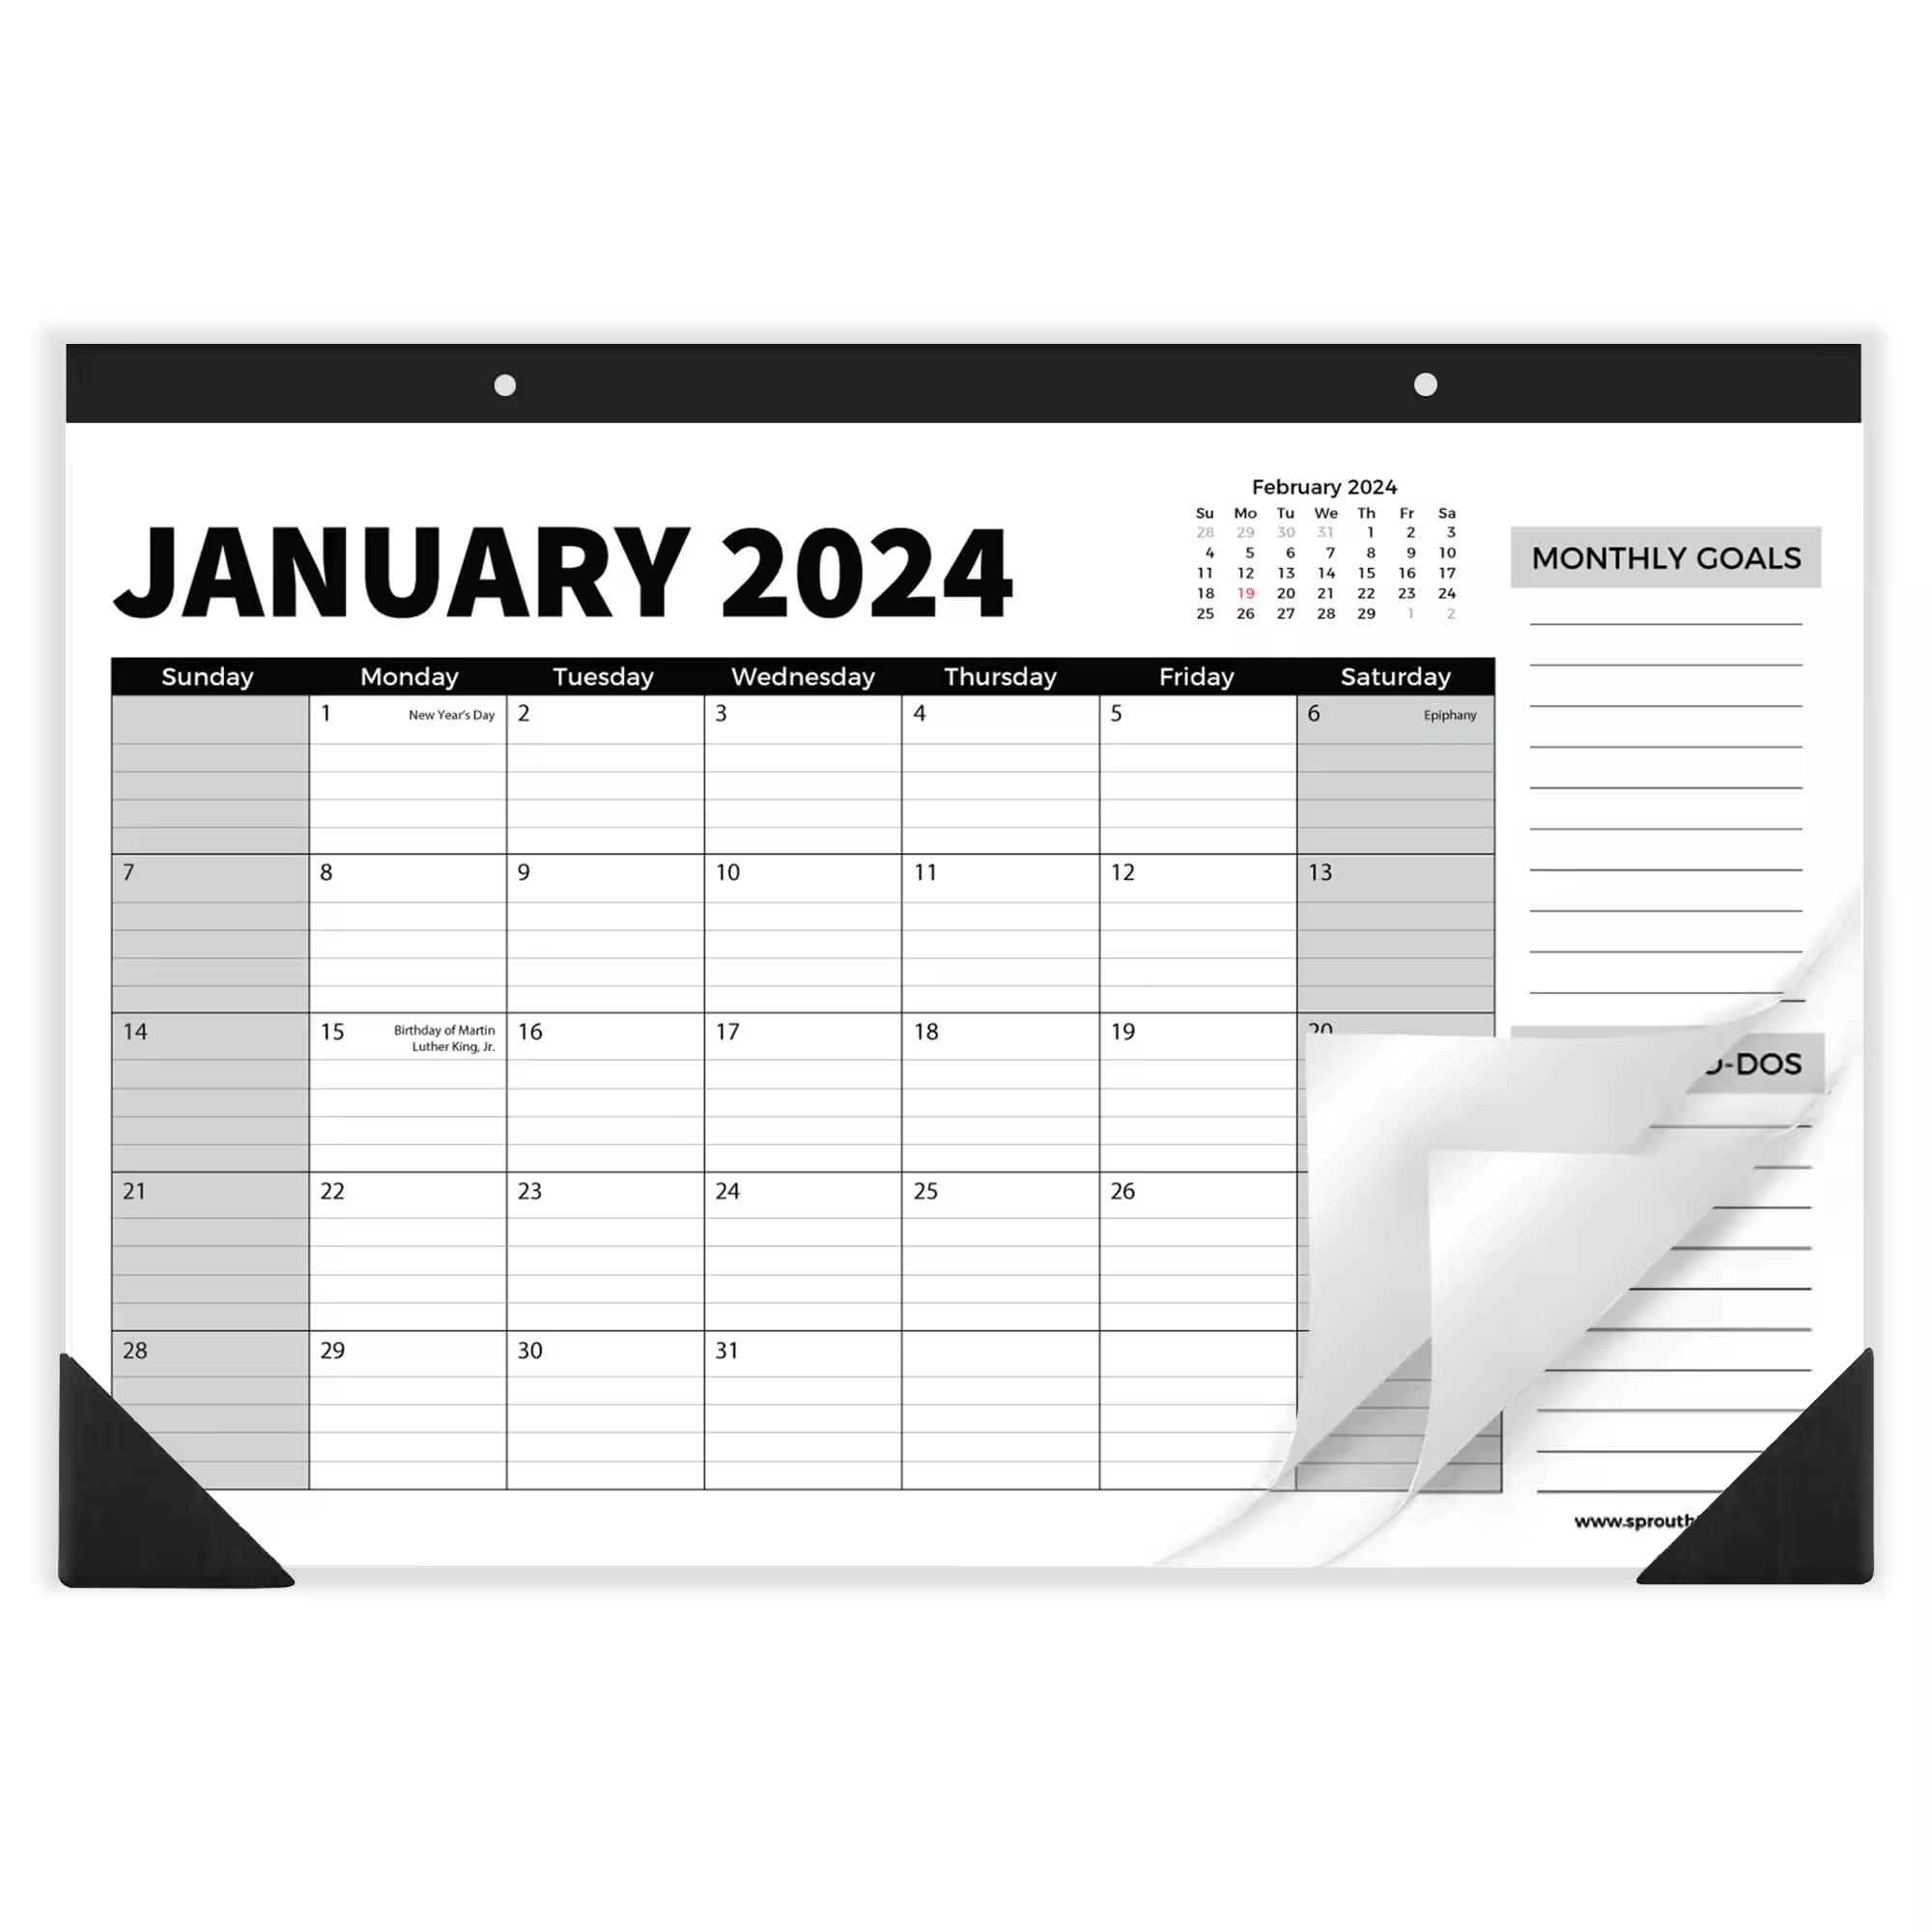 18-Month Calendar Monthly Planner 2024-2025 - 17" X 12" Inch Wall Calendar Planning Calendar